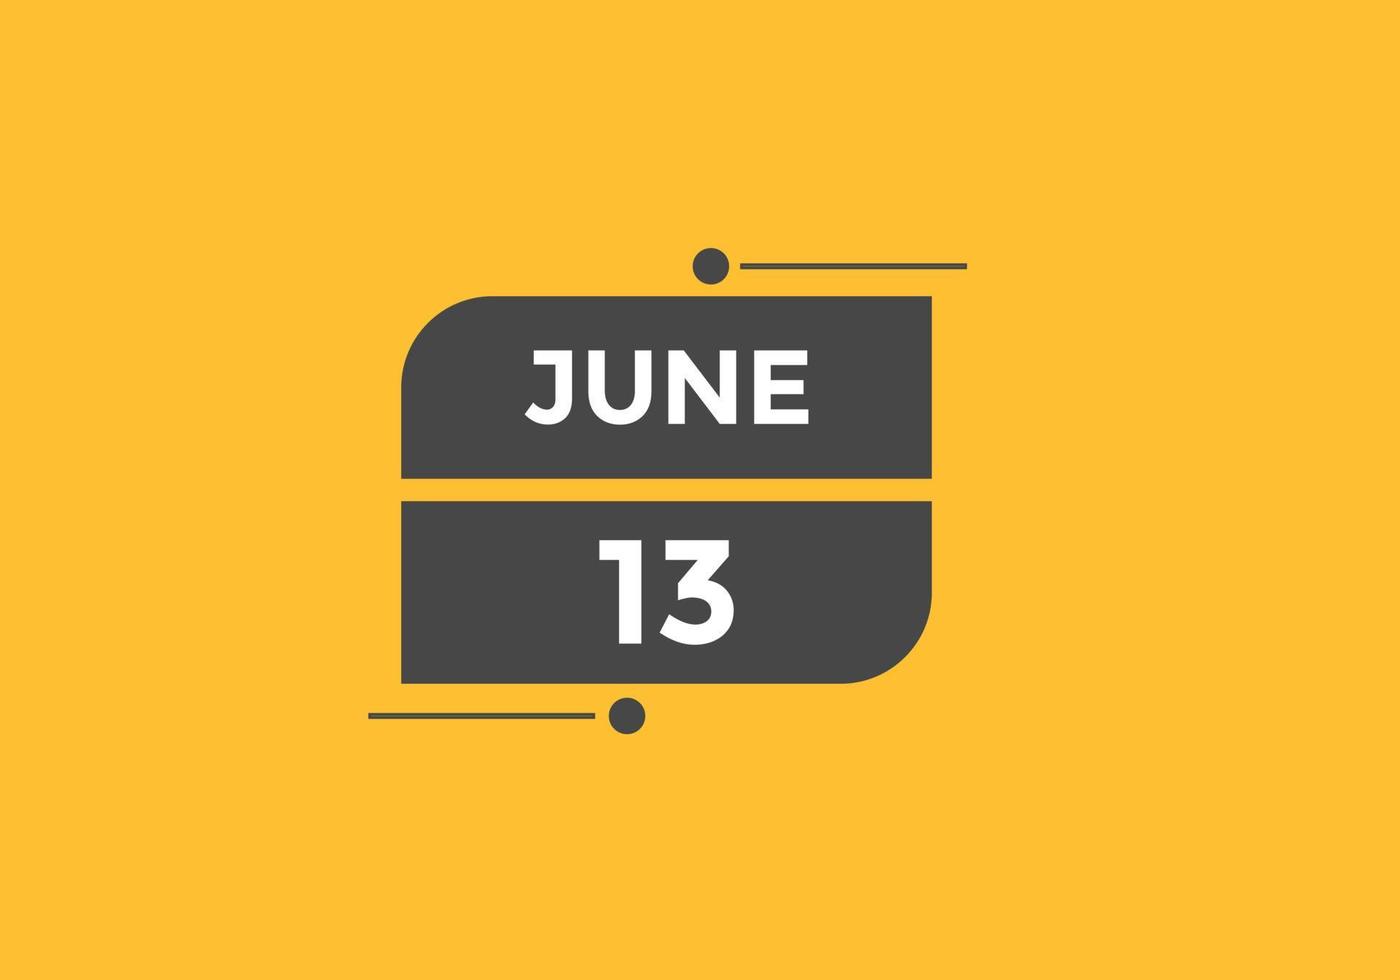 lembrete de calendário de 13 de junho. 13 de junho modelo de ícone de calendário diário. modelo de design de ícone de calendário 13 de junho. ilustração vetorial vetor